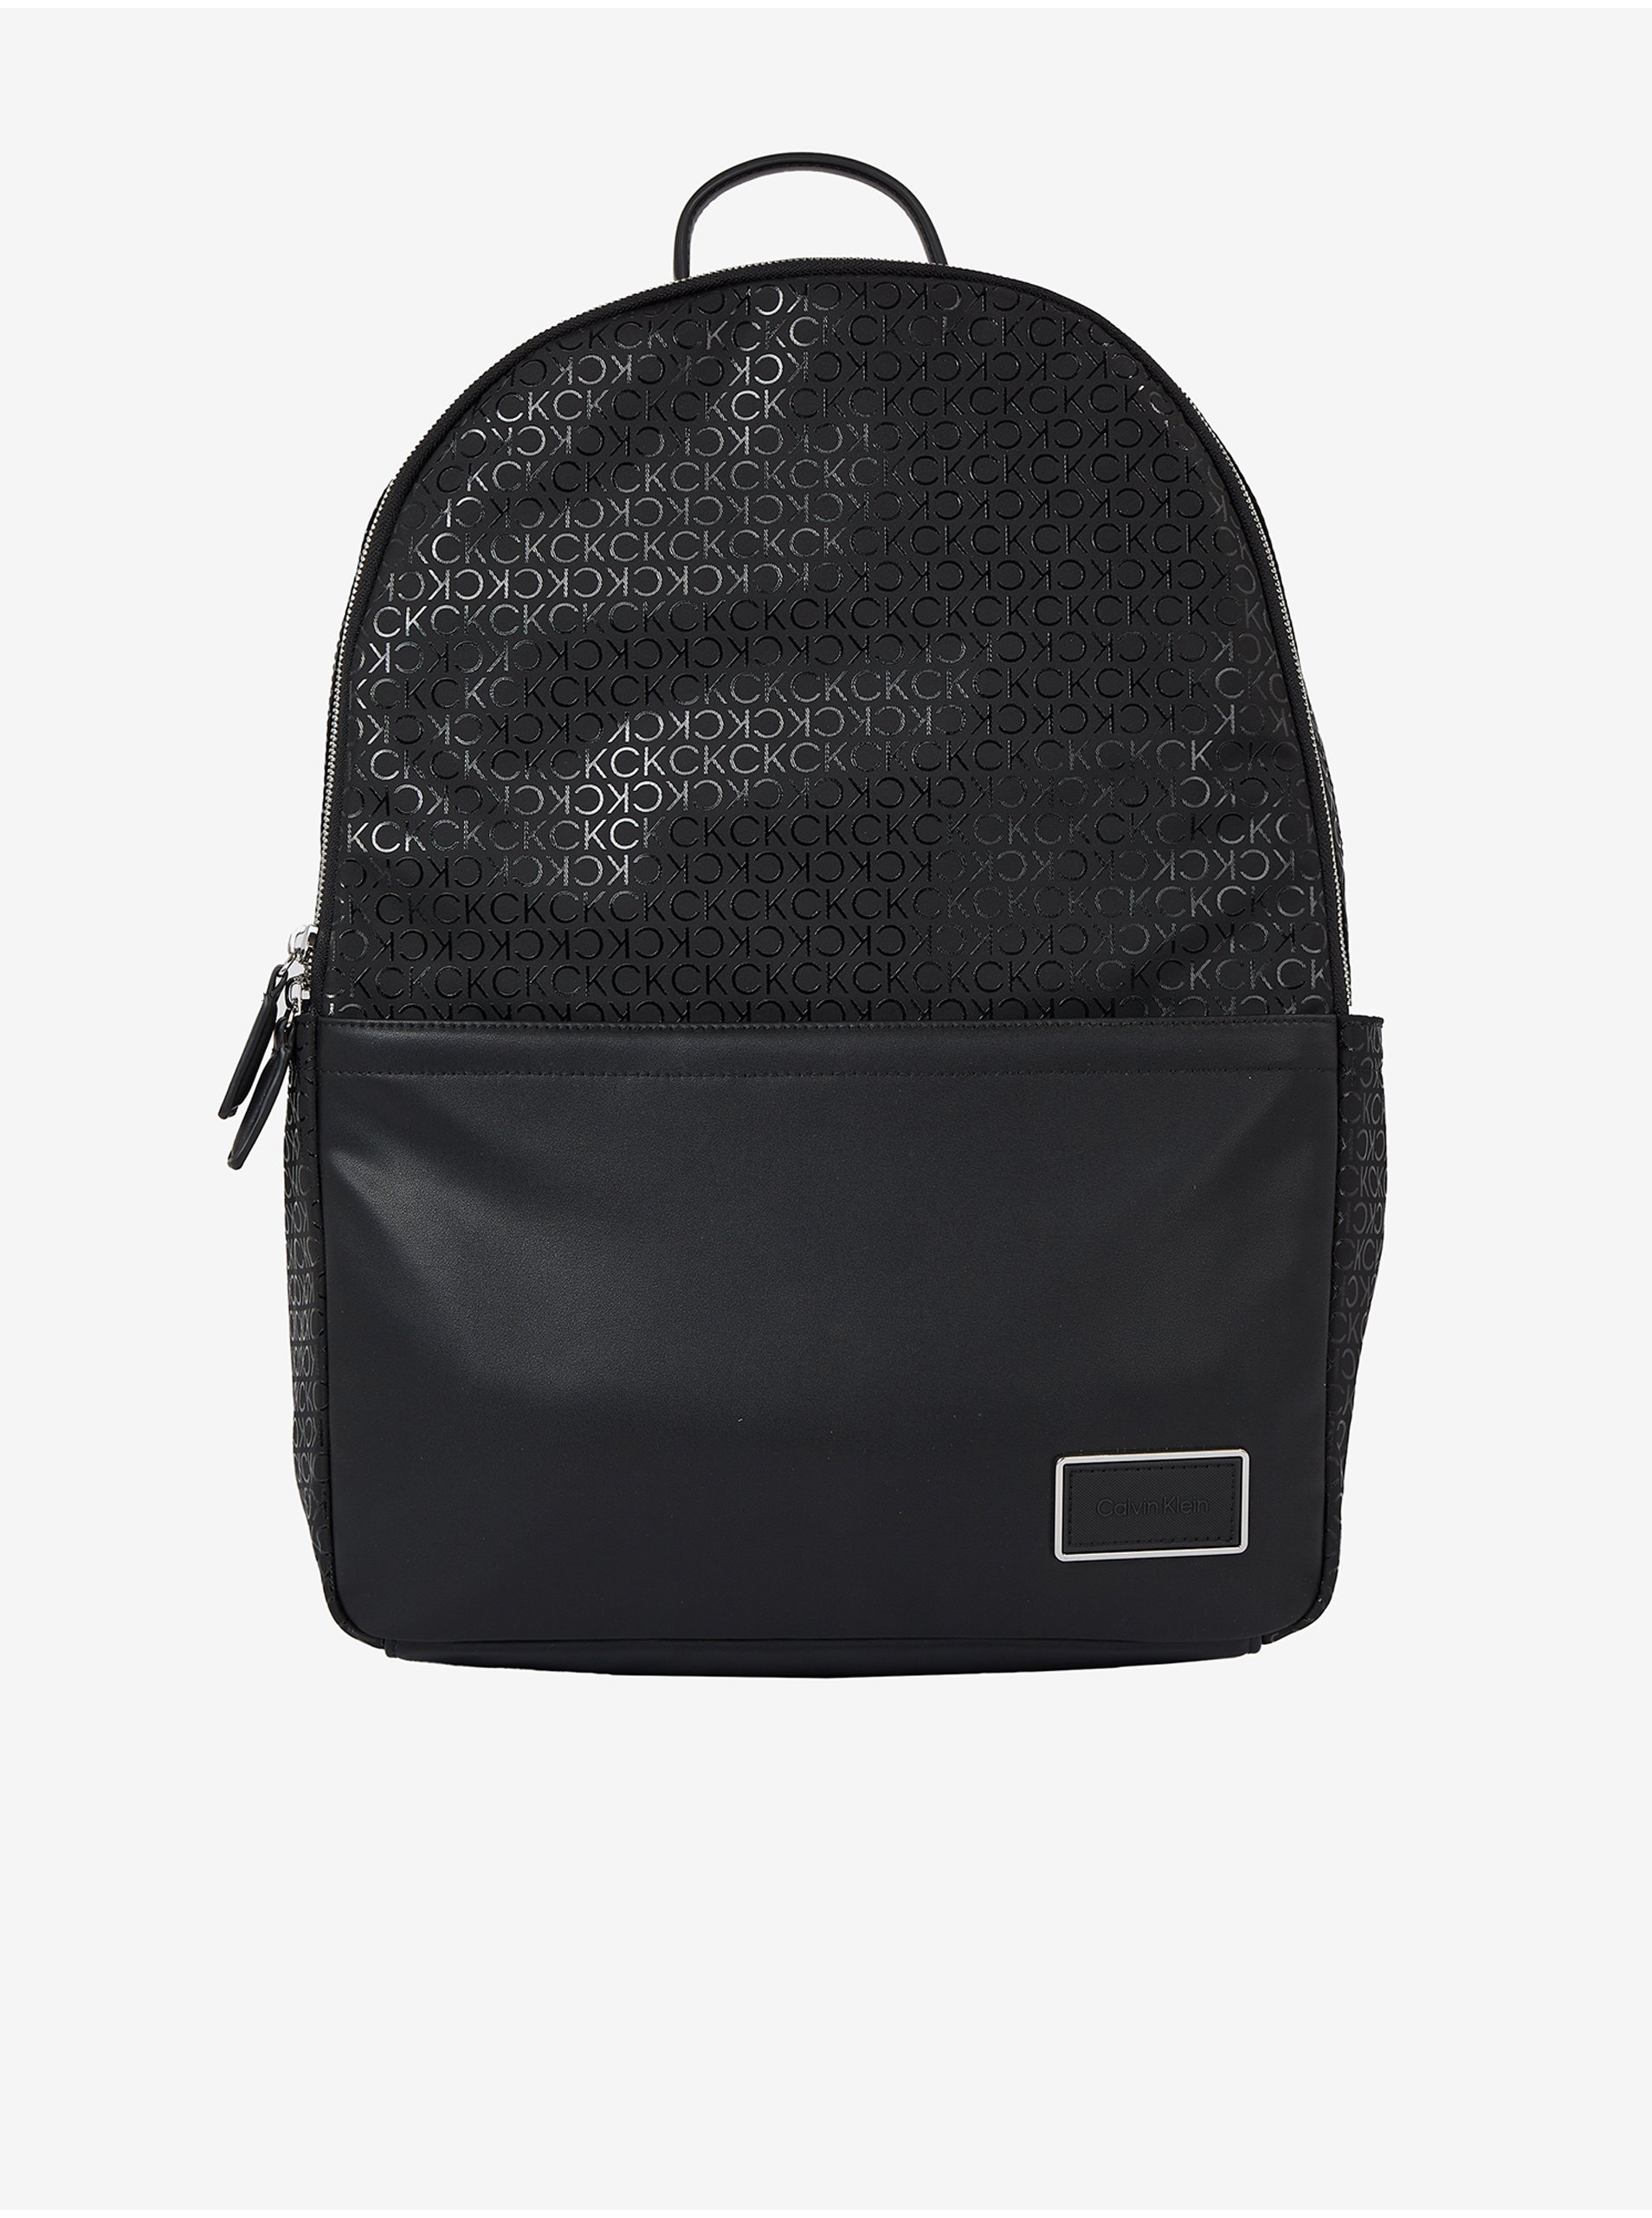 Black Men's Patterned Backpack Calvin Klein - Men